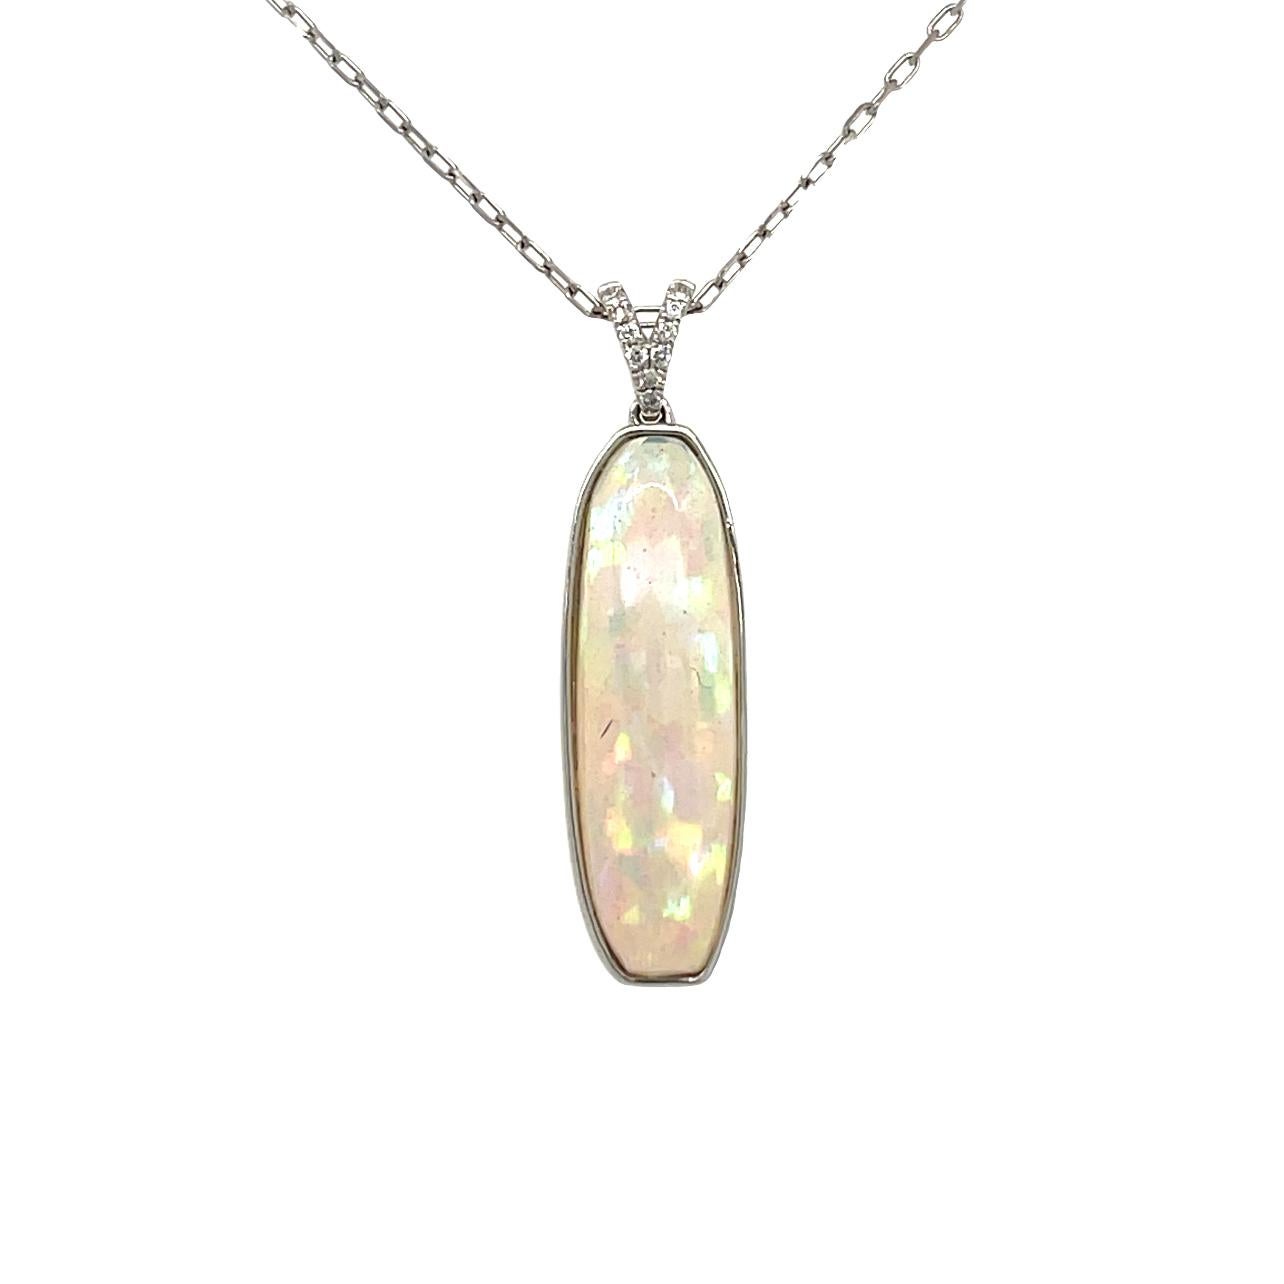 Ce vibrant pendentif en opale éthiopienne allongée et diamant est serti en or blanc 14 carats. Des diamants de taille brillante scintillent sur la bague pour mettre l'accent sur la beauté de la pièce. Ce pendentif sera expédié dans une belle boîte,